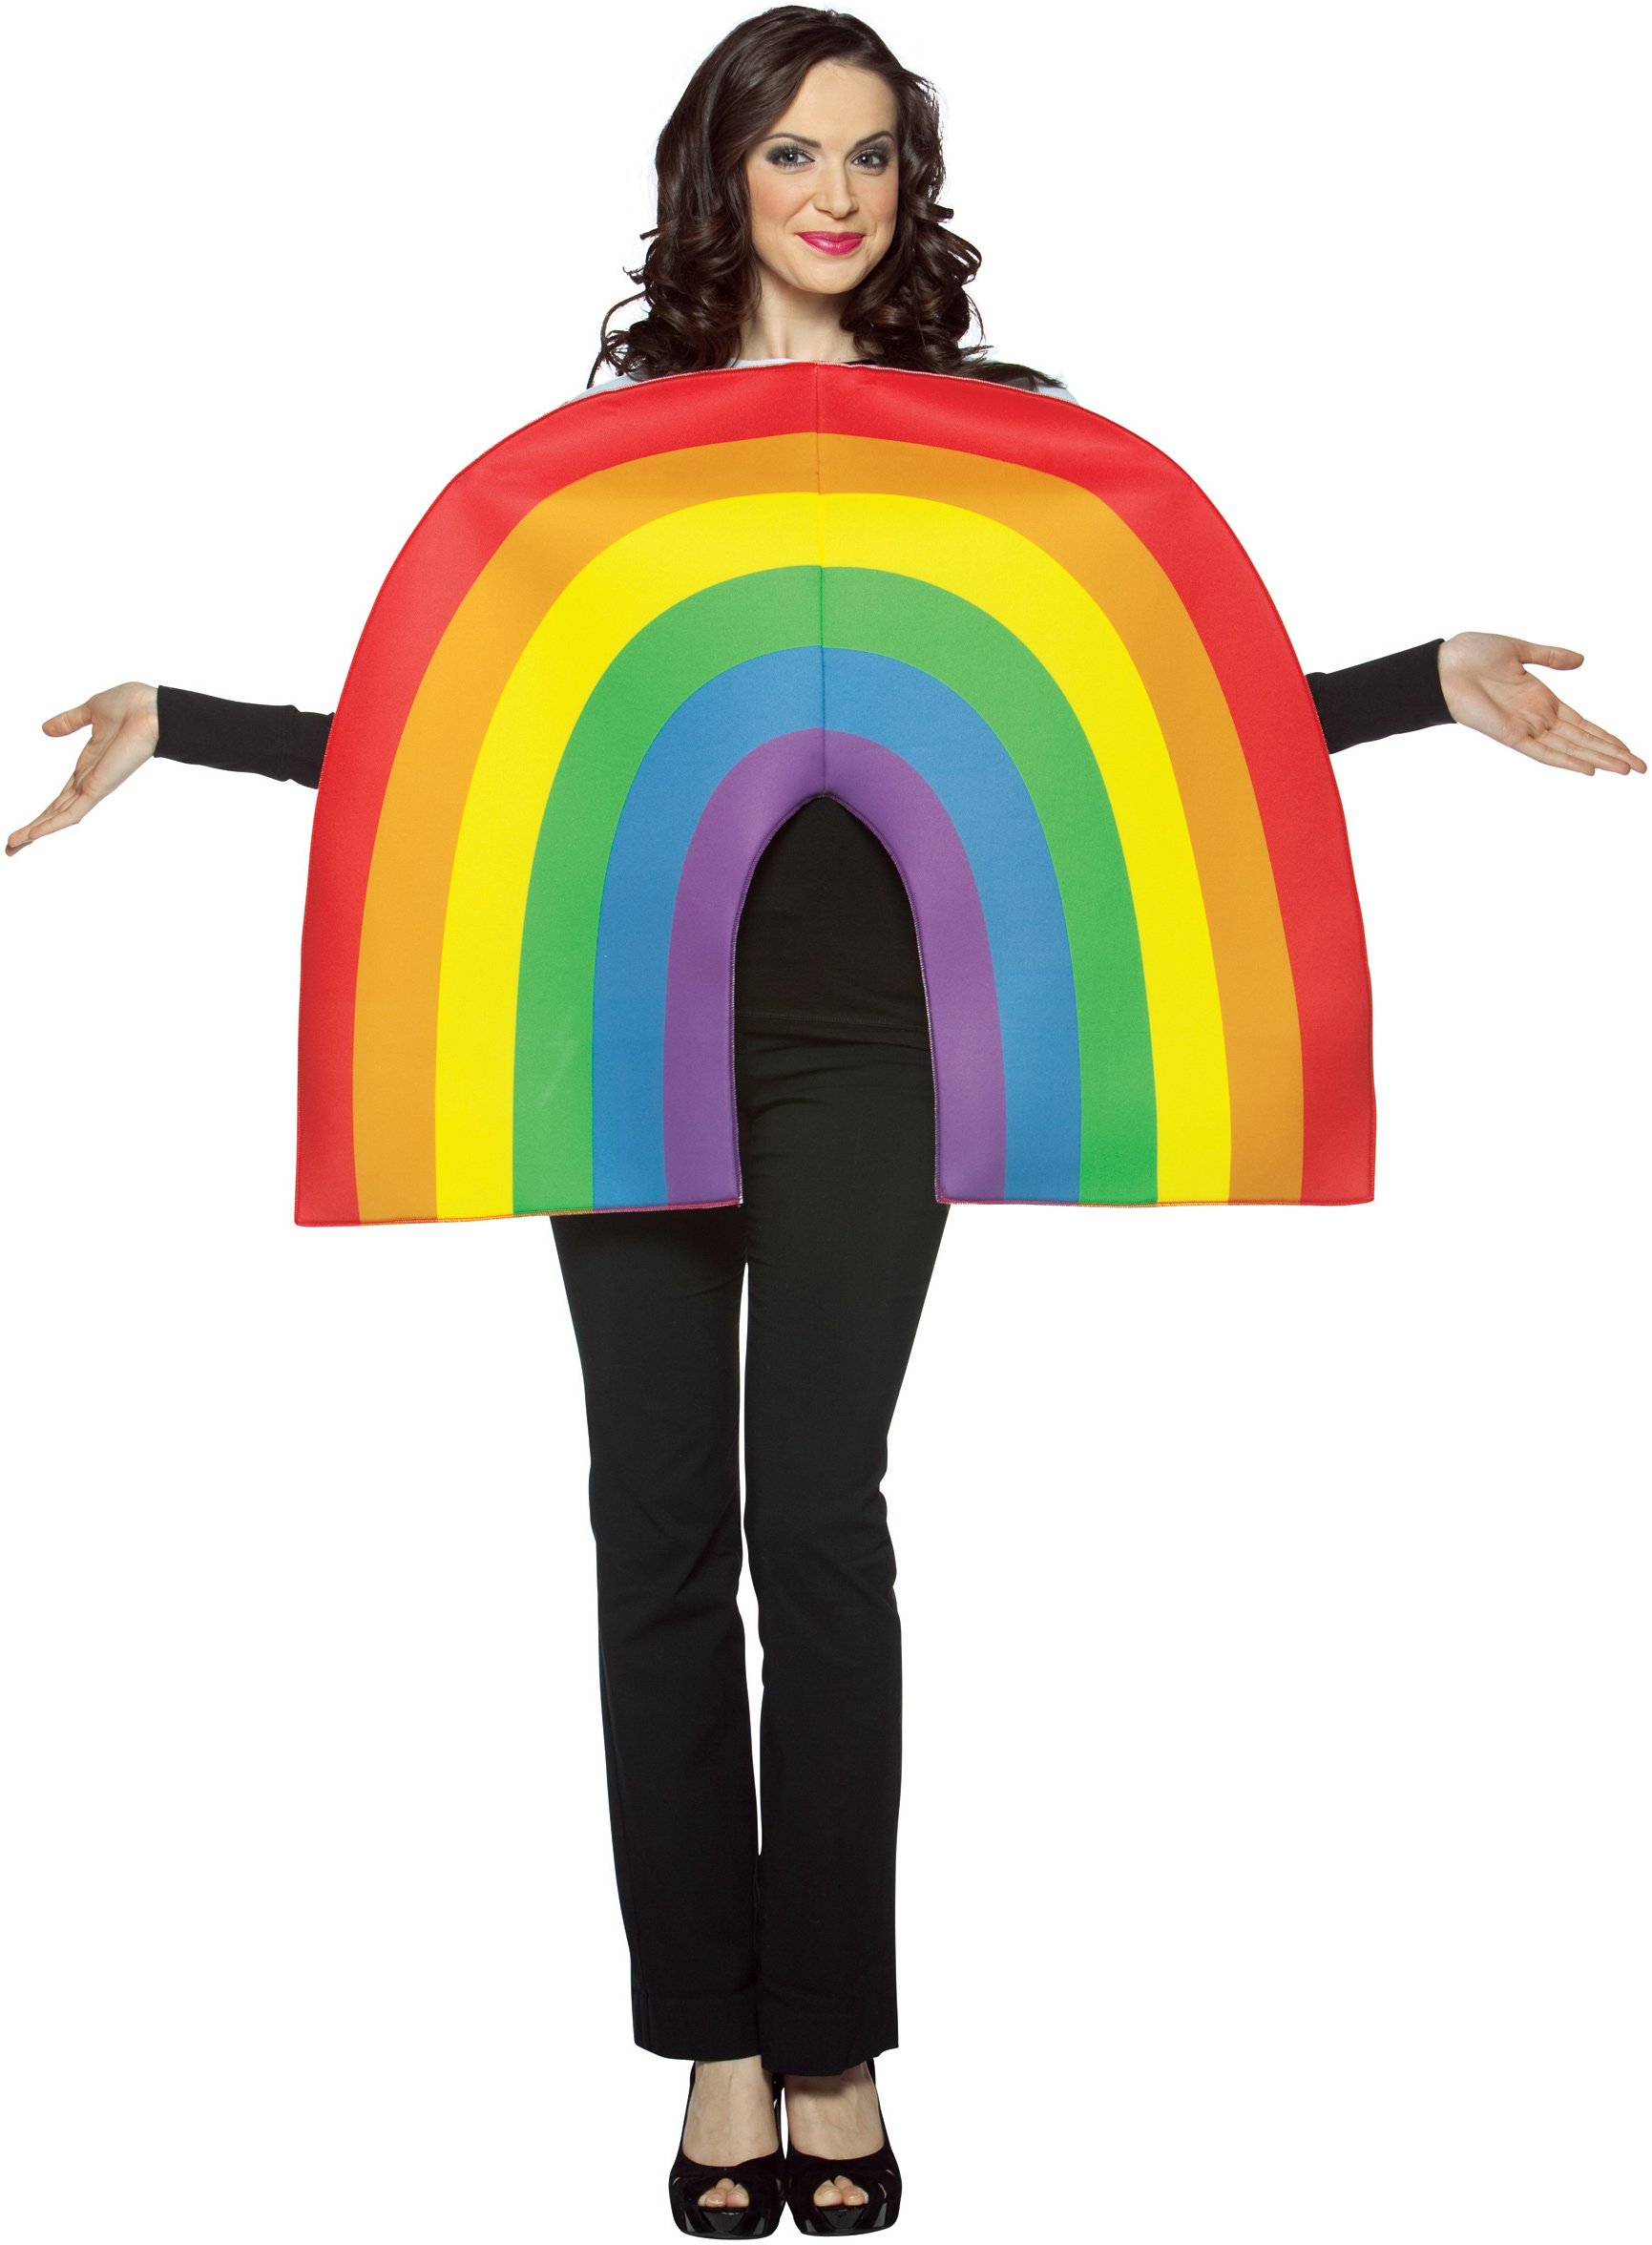 Rainbow Adult Costume